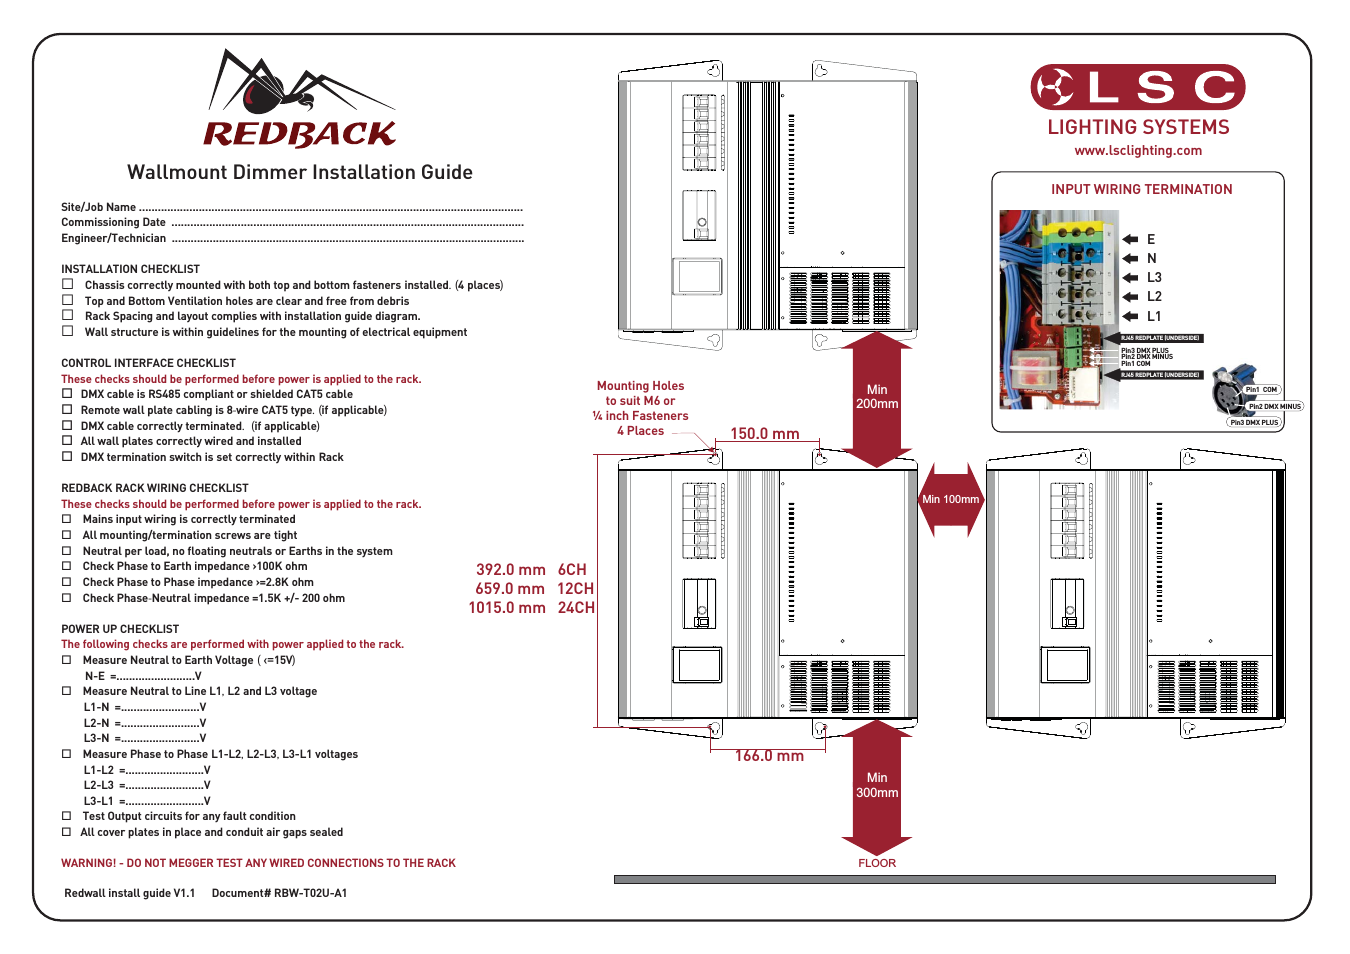 Redback Wallmount Install Guide v1.1